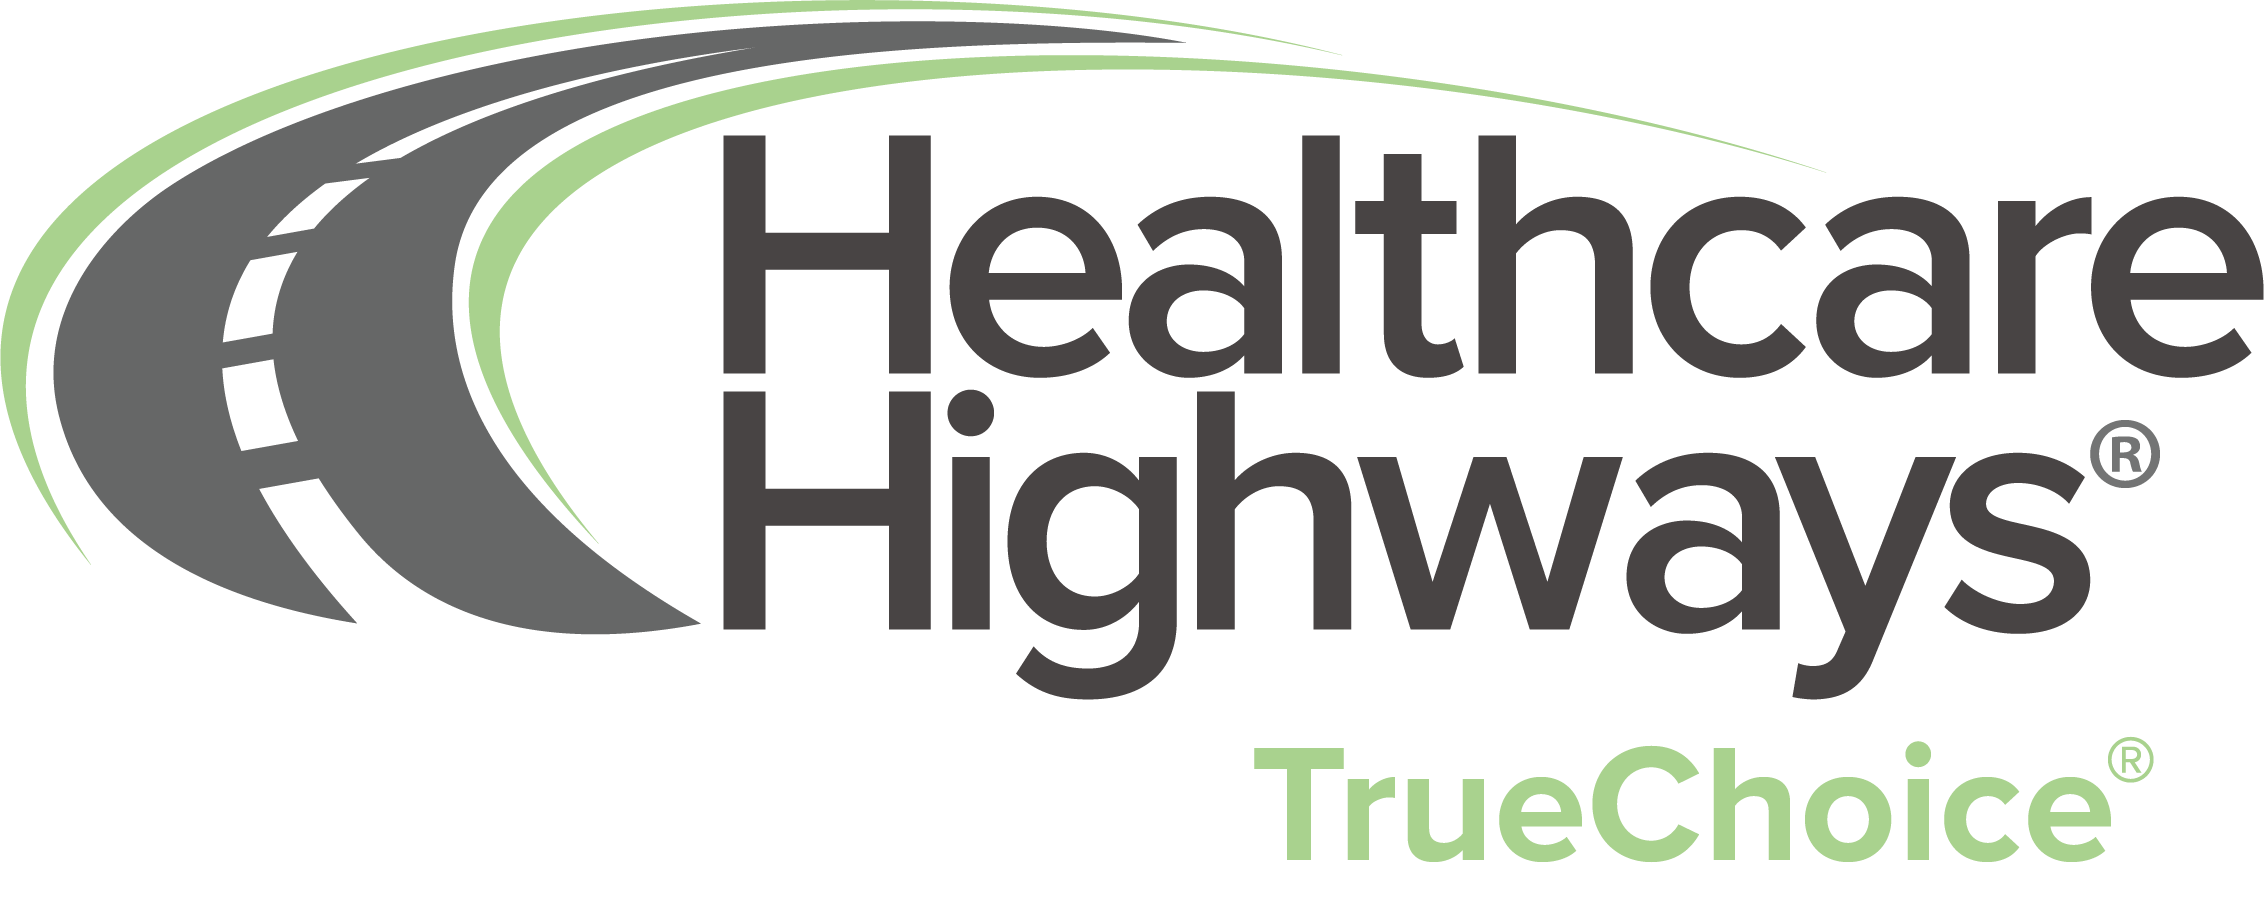 healthcare-highways